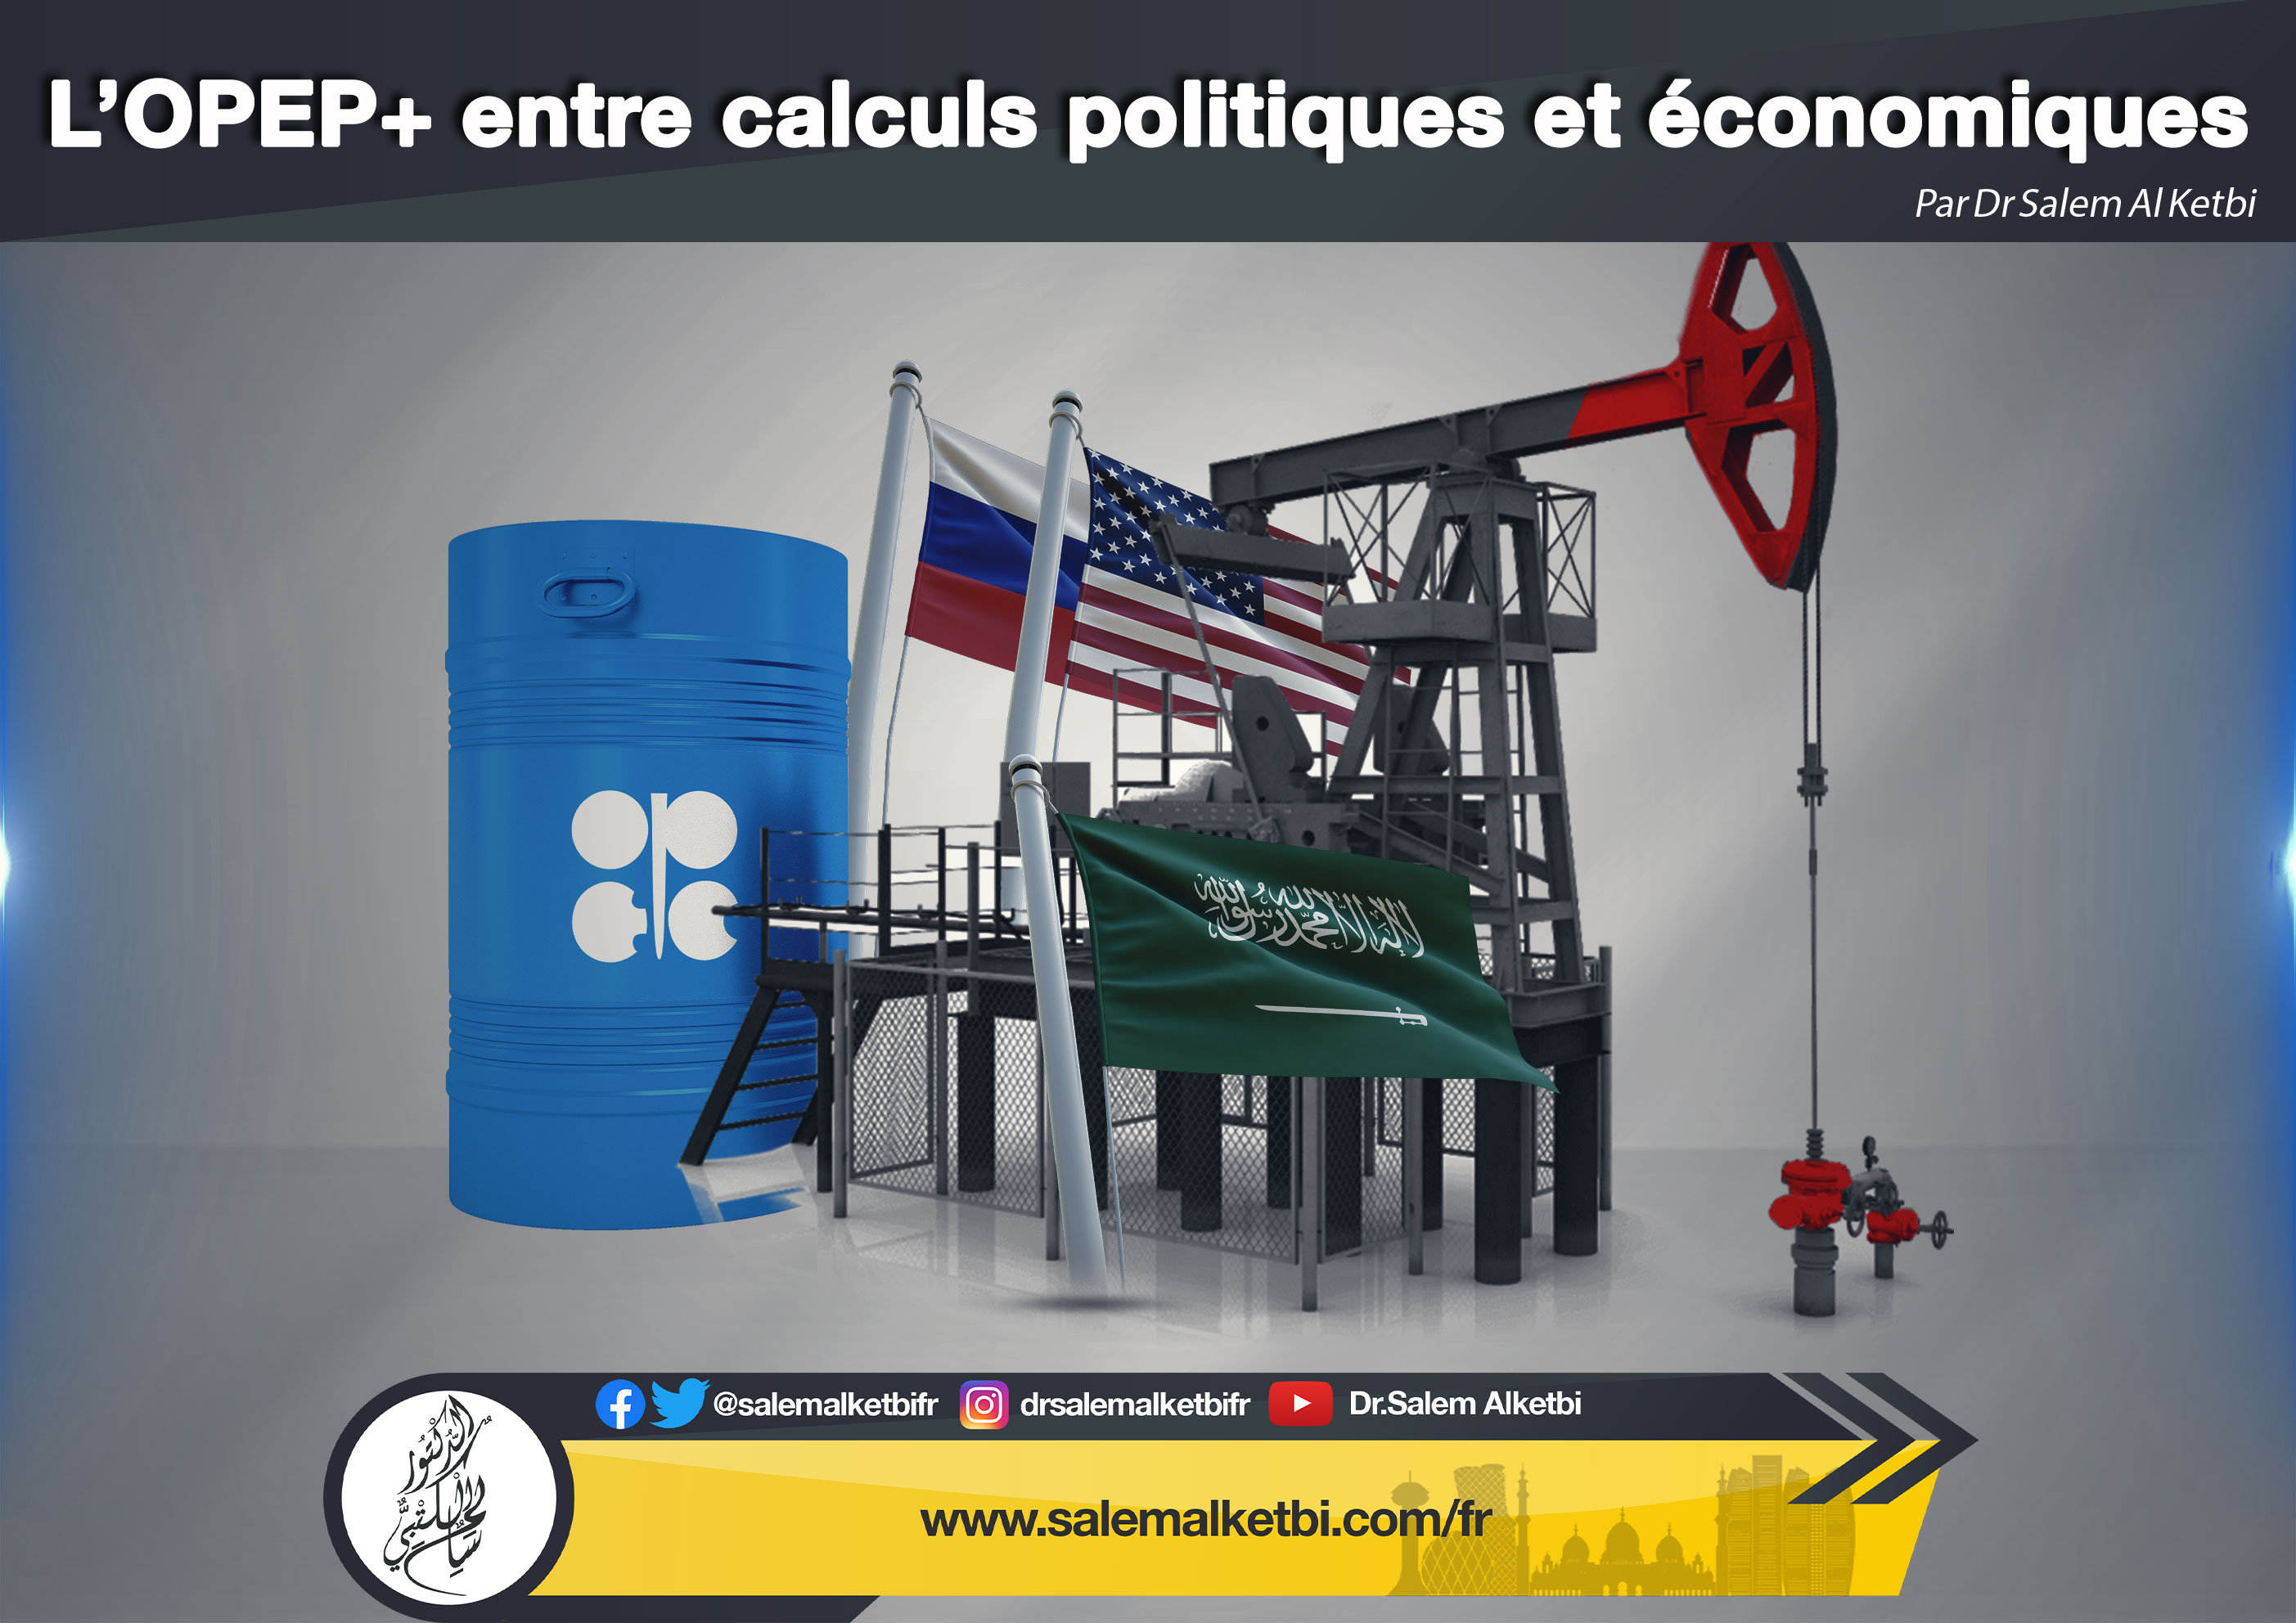 L'OPEP+ entre calculs politiques et économiques